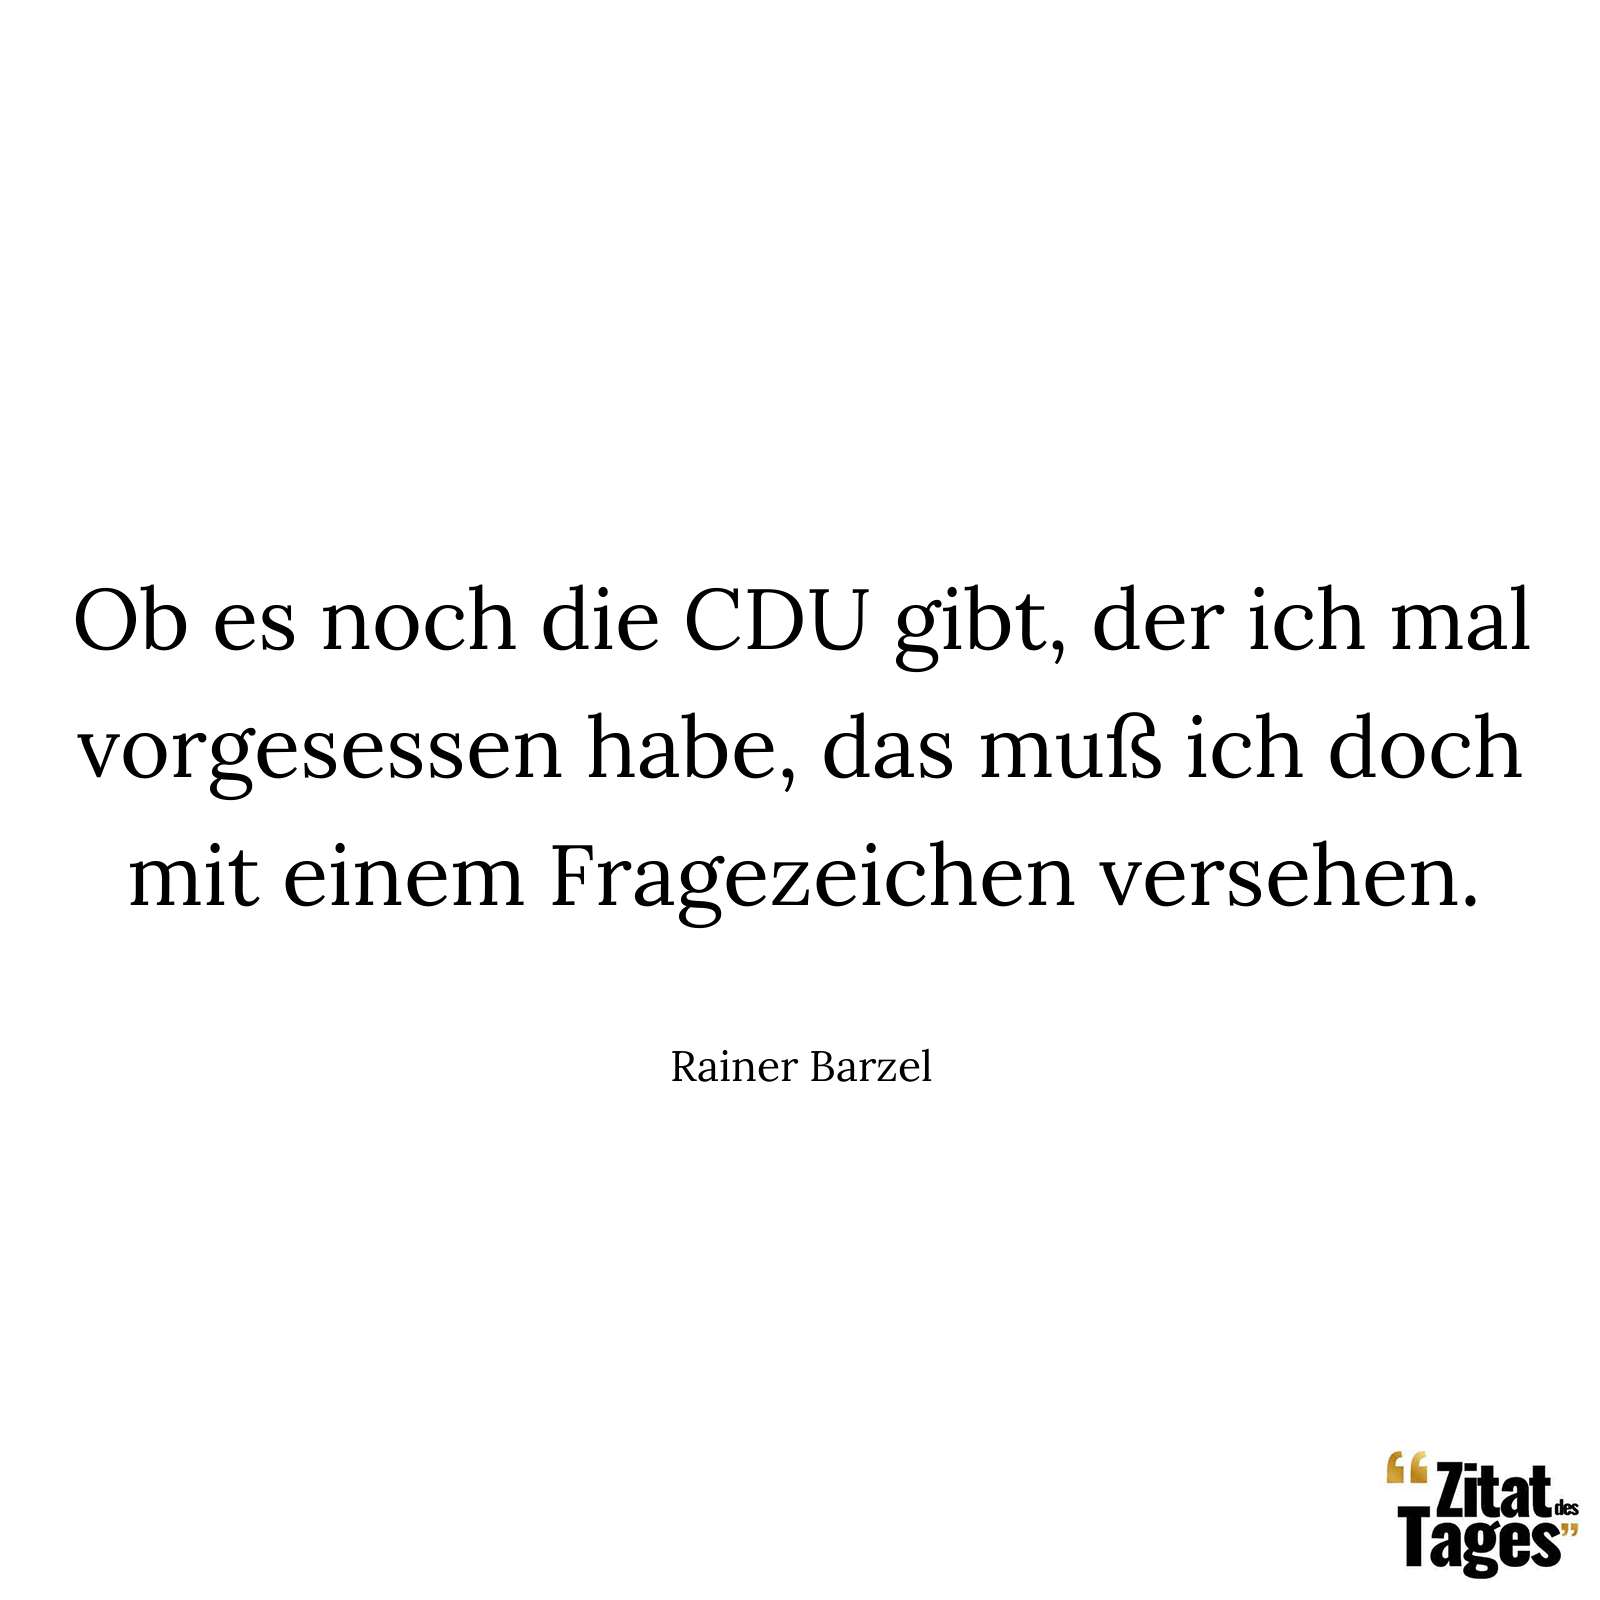 Ob es noch die CDU gibt, der ich mal vorgesessen habe, das muß ich doch mit einem Fragezeichen versehen. - Rainer Barzel